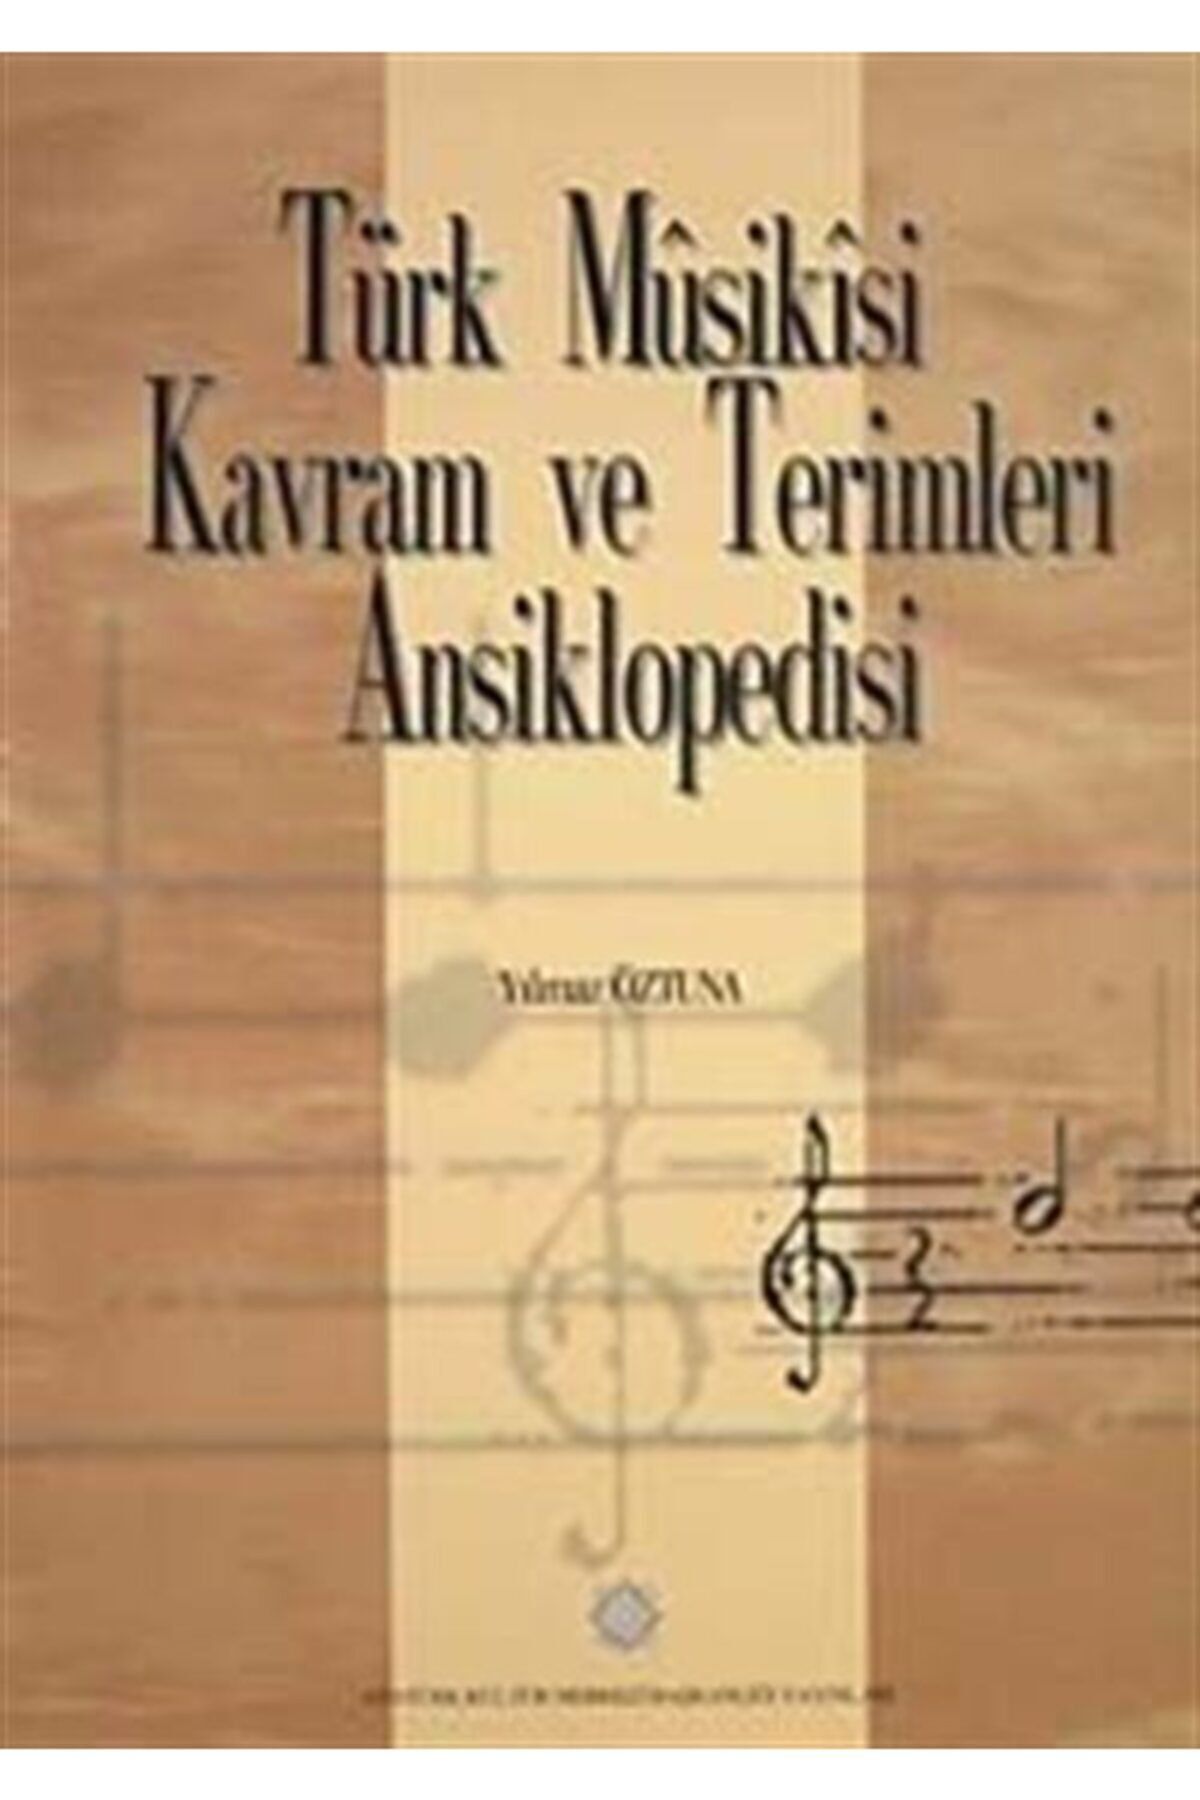 Atatürk Kültür Merkezi Yayınları Türk Musikisi Kavram ve Terimleri Ansiklopedisi